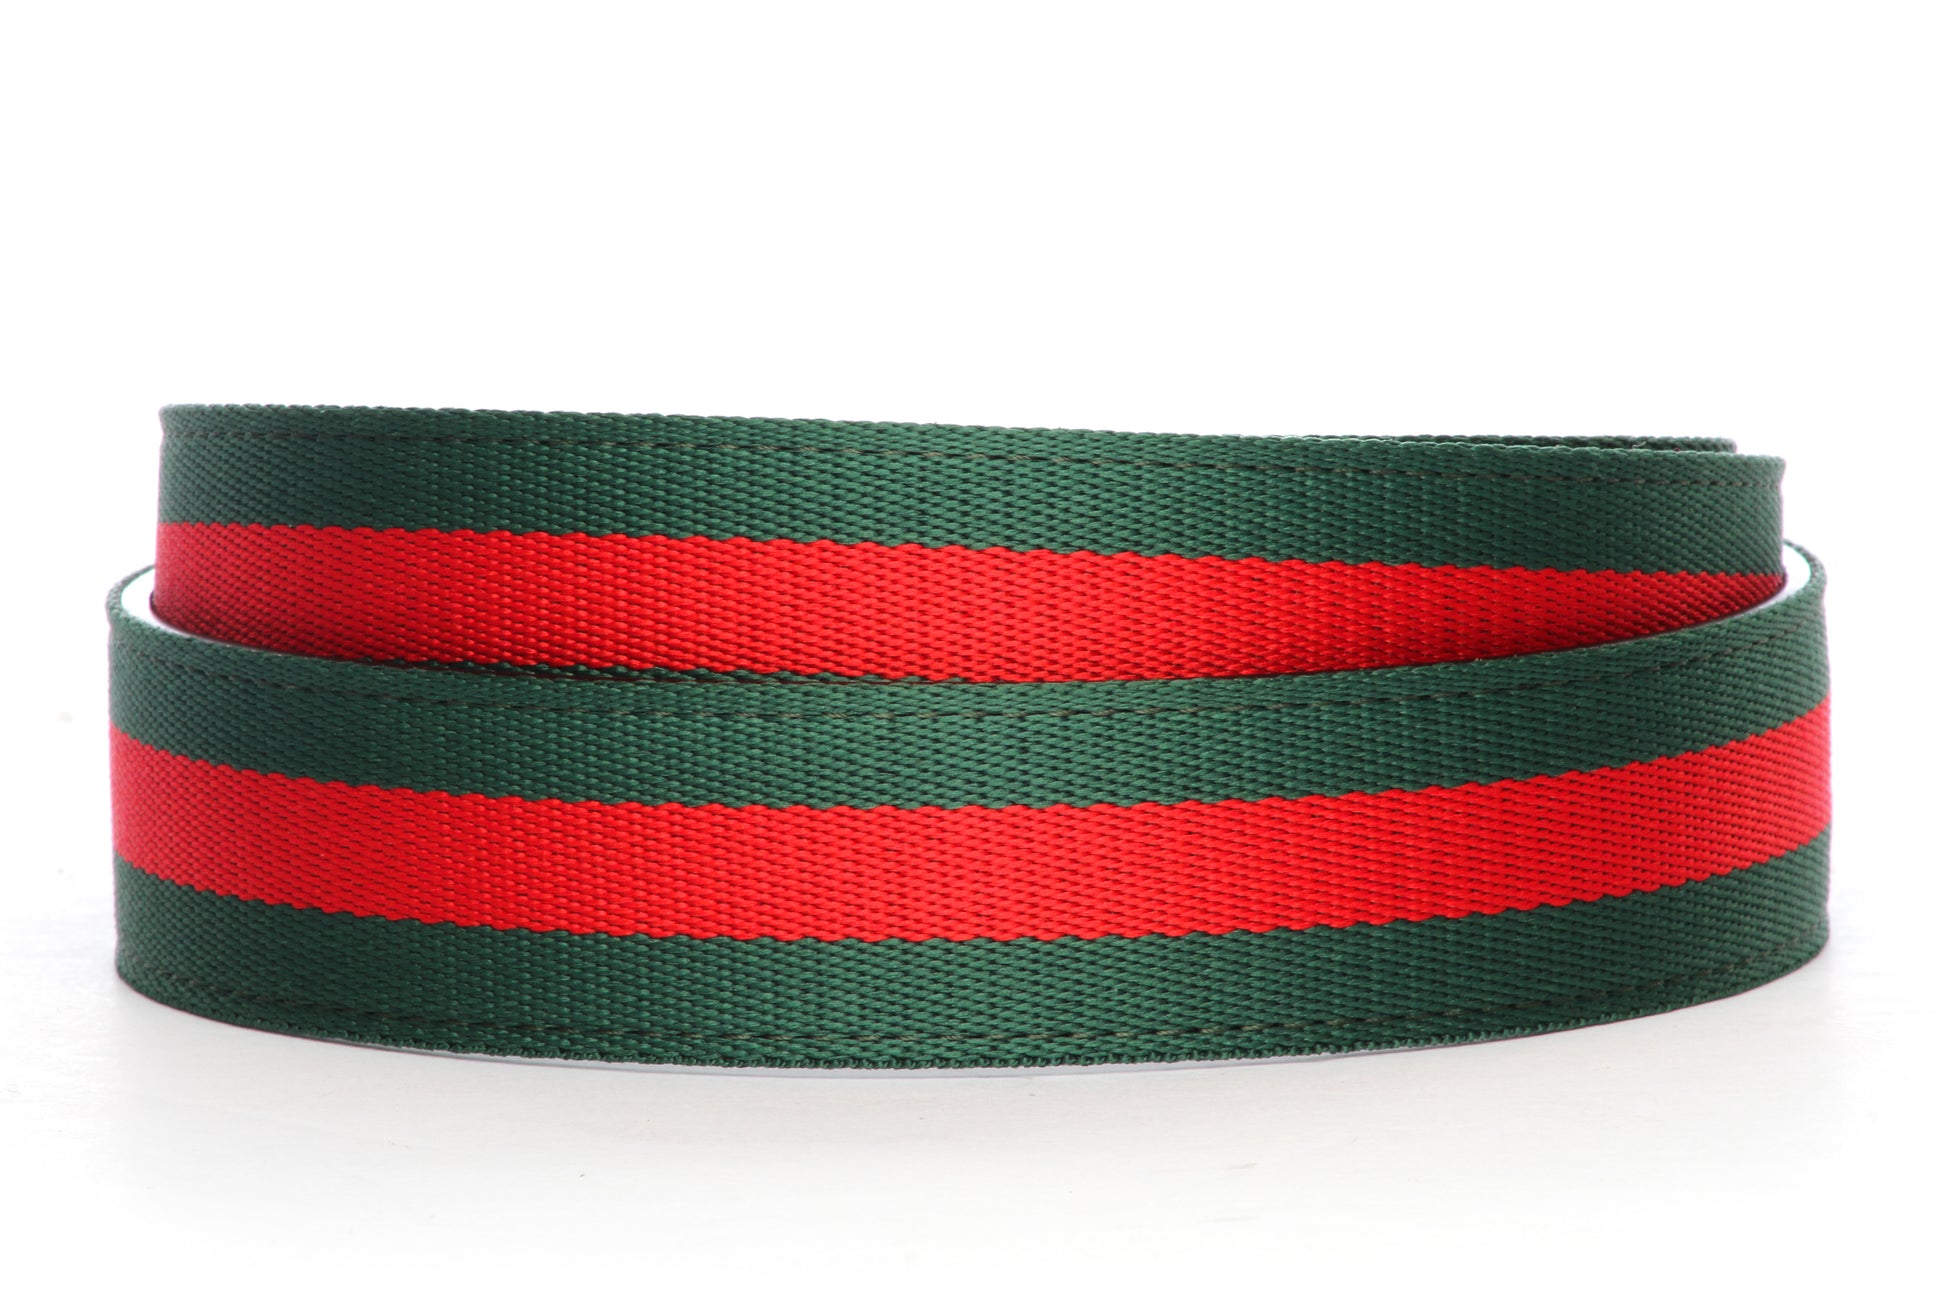 Cloth Belt Strap - Men's Ratchet Belt - Green-Red Stripe, 1.5